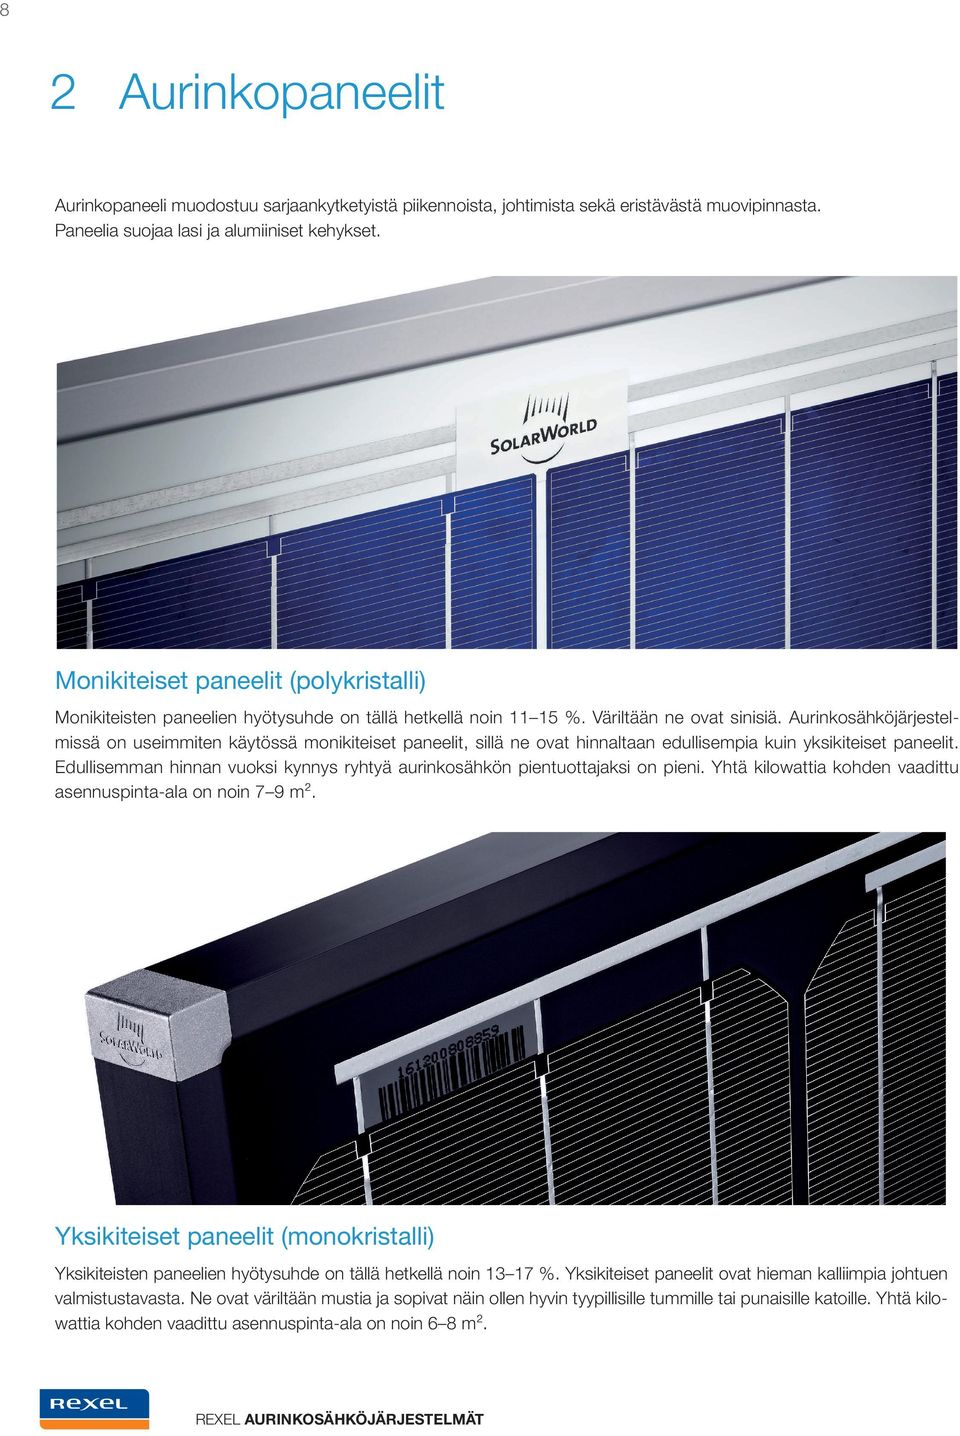 Aurinkosähköjärjestelmissä on useimmiten käytössä monikiteiset paneelit, sillä ne ovat hinnaltaan edullisempia kuin yksikiteiset paneelit.